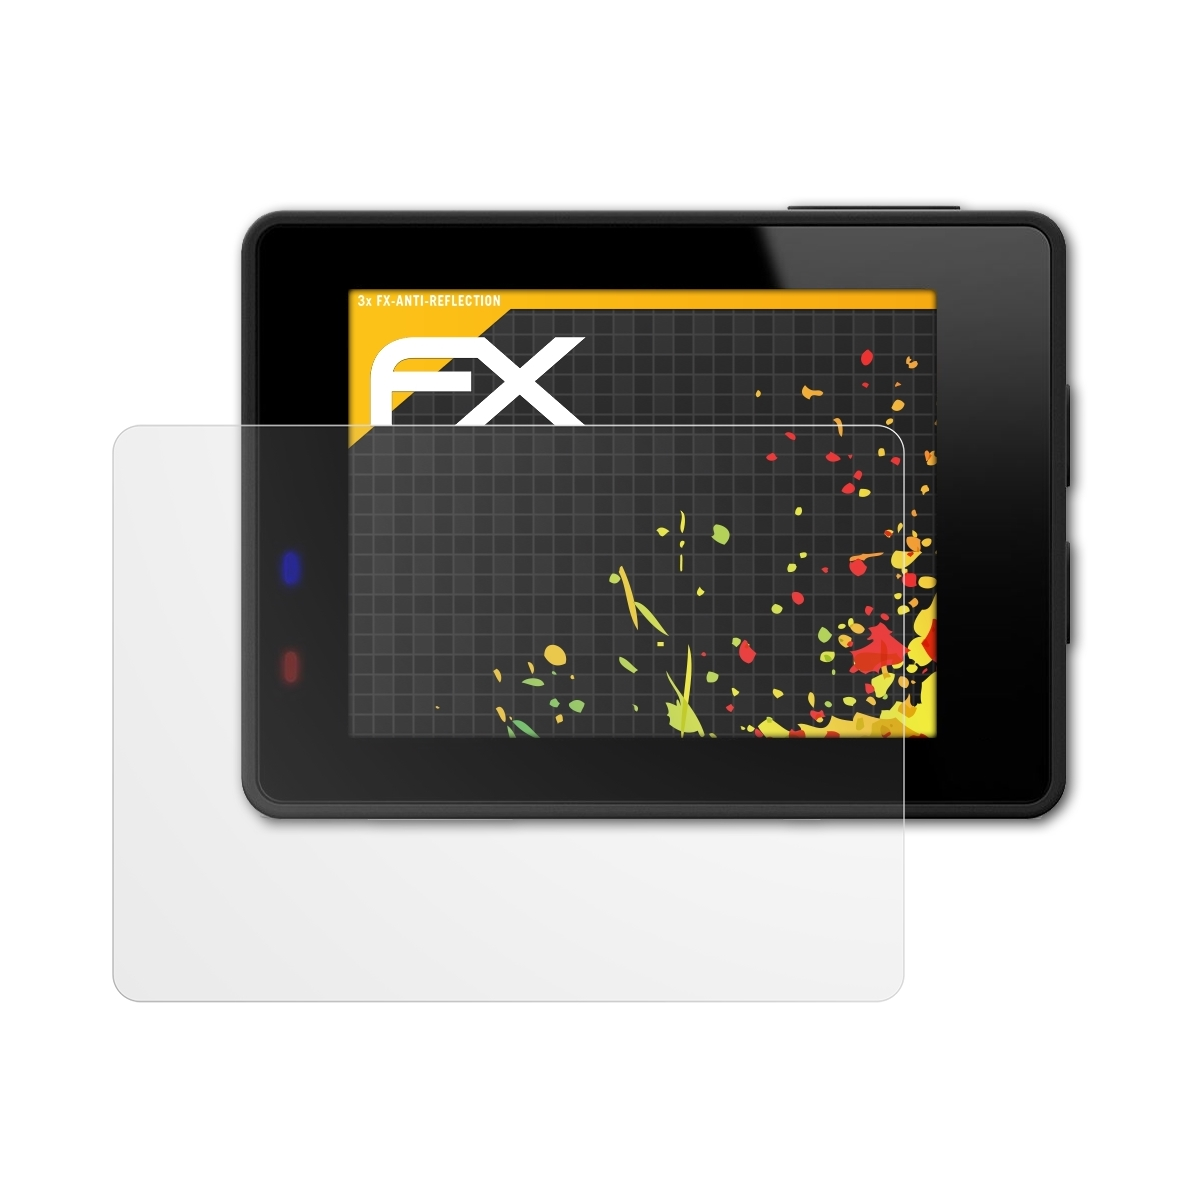 FX-Antireflex Apeman ATFOLIX Trawo) 3x Displayschutz(für